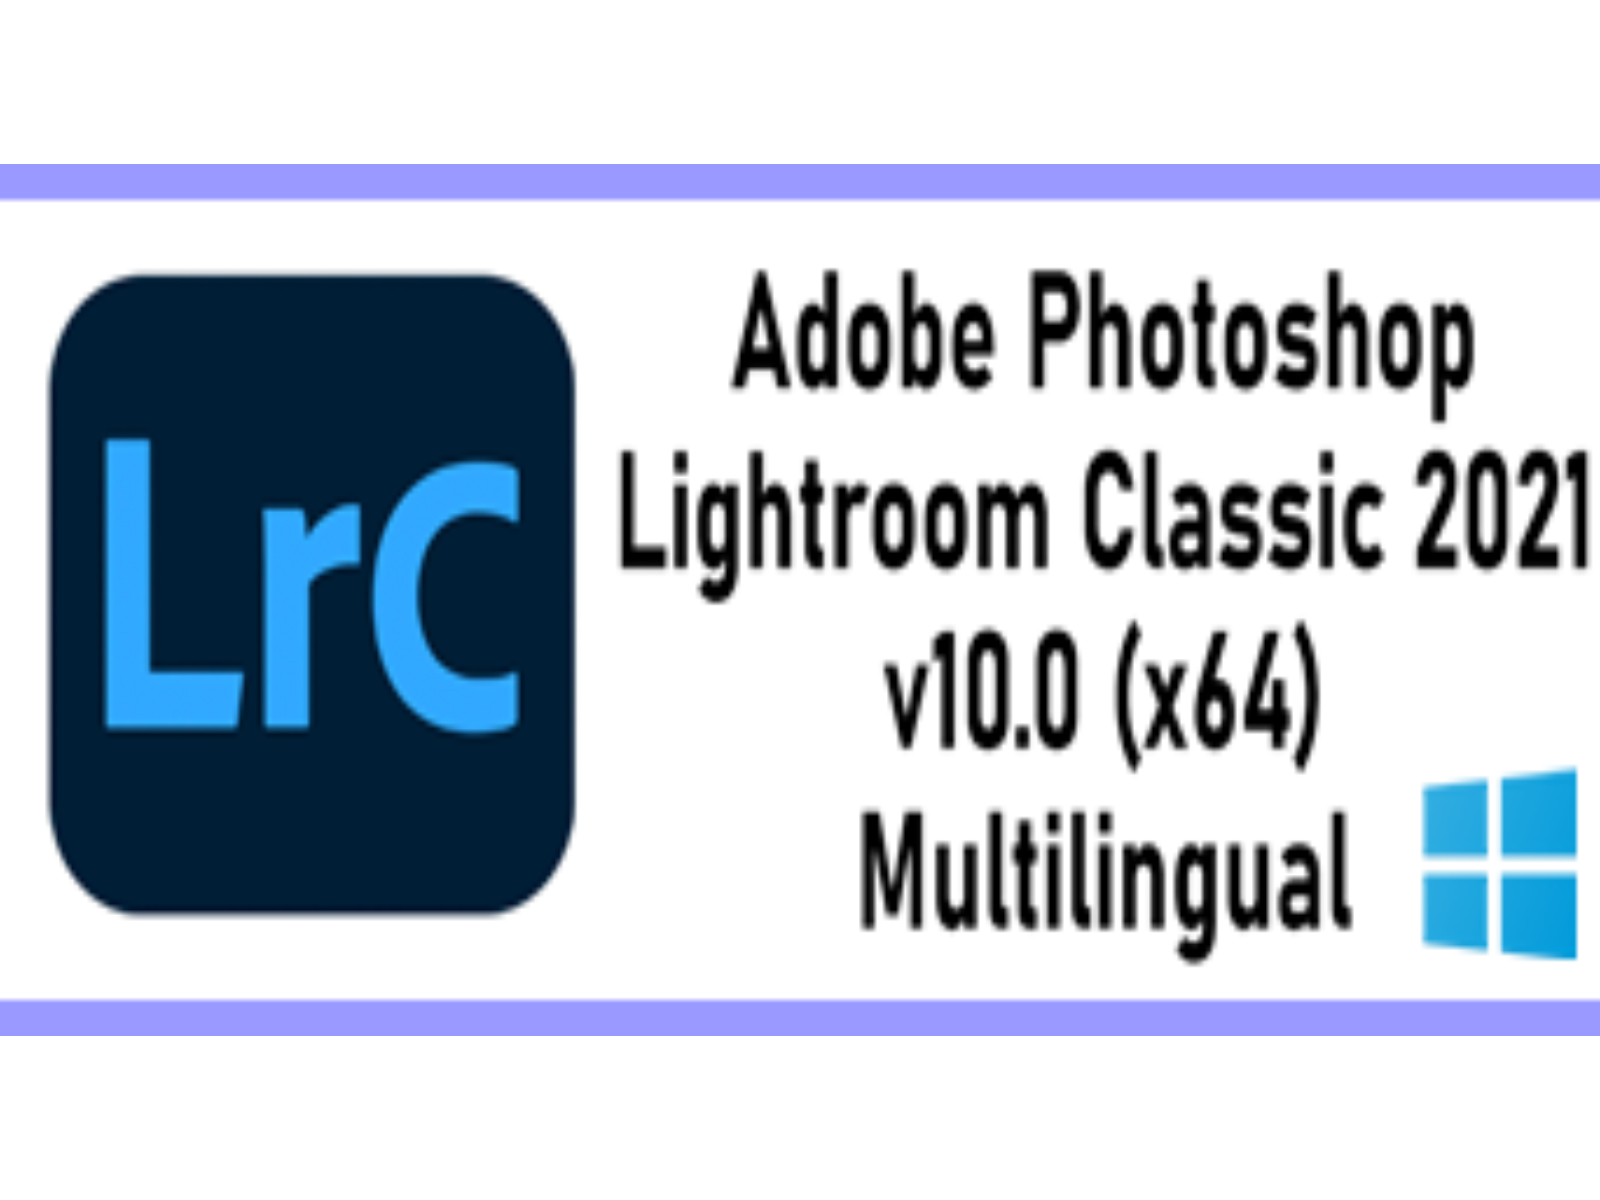 L‌‌i‌g‌‌h‌‌t‌‌r‌o‌o‌m‌ Classic 2021 v10.0 (x64) Multilingual ‌W‌i‌n‌d‌o‌w‌s